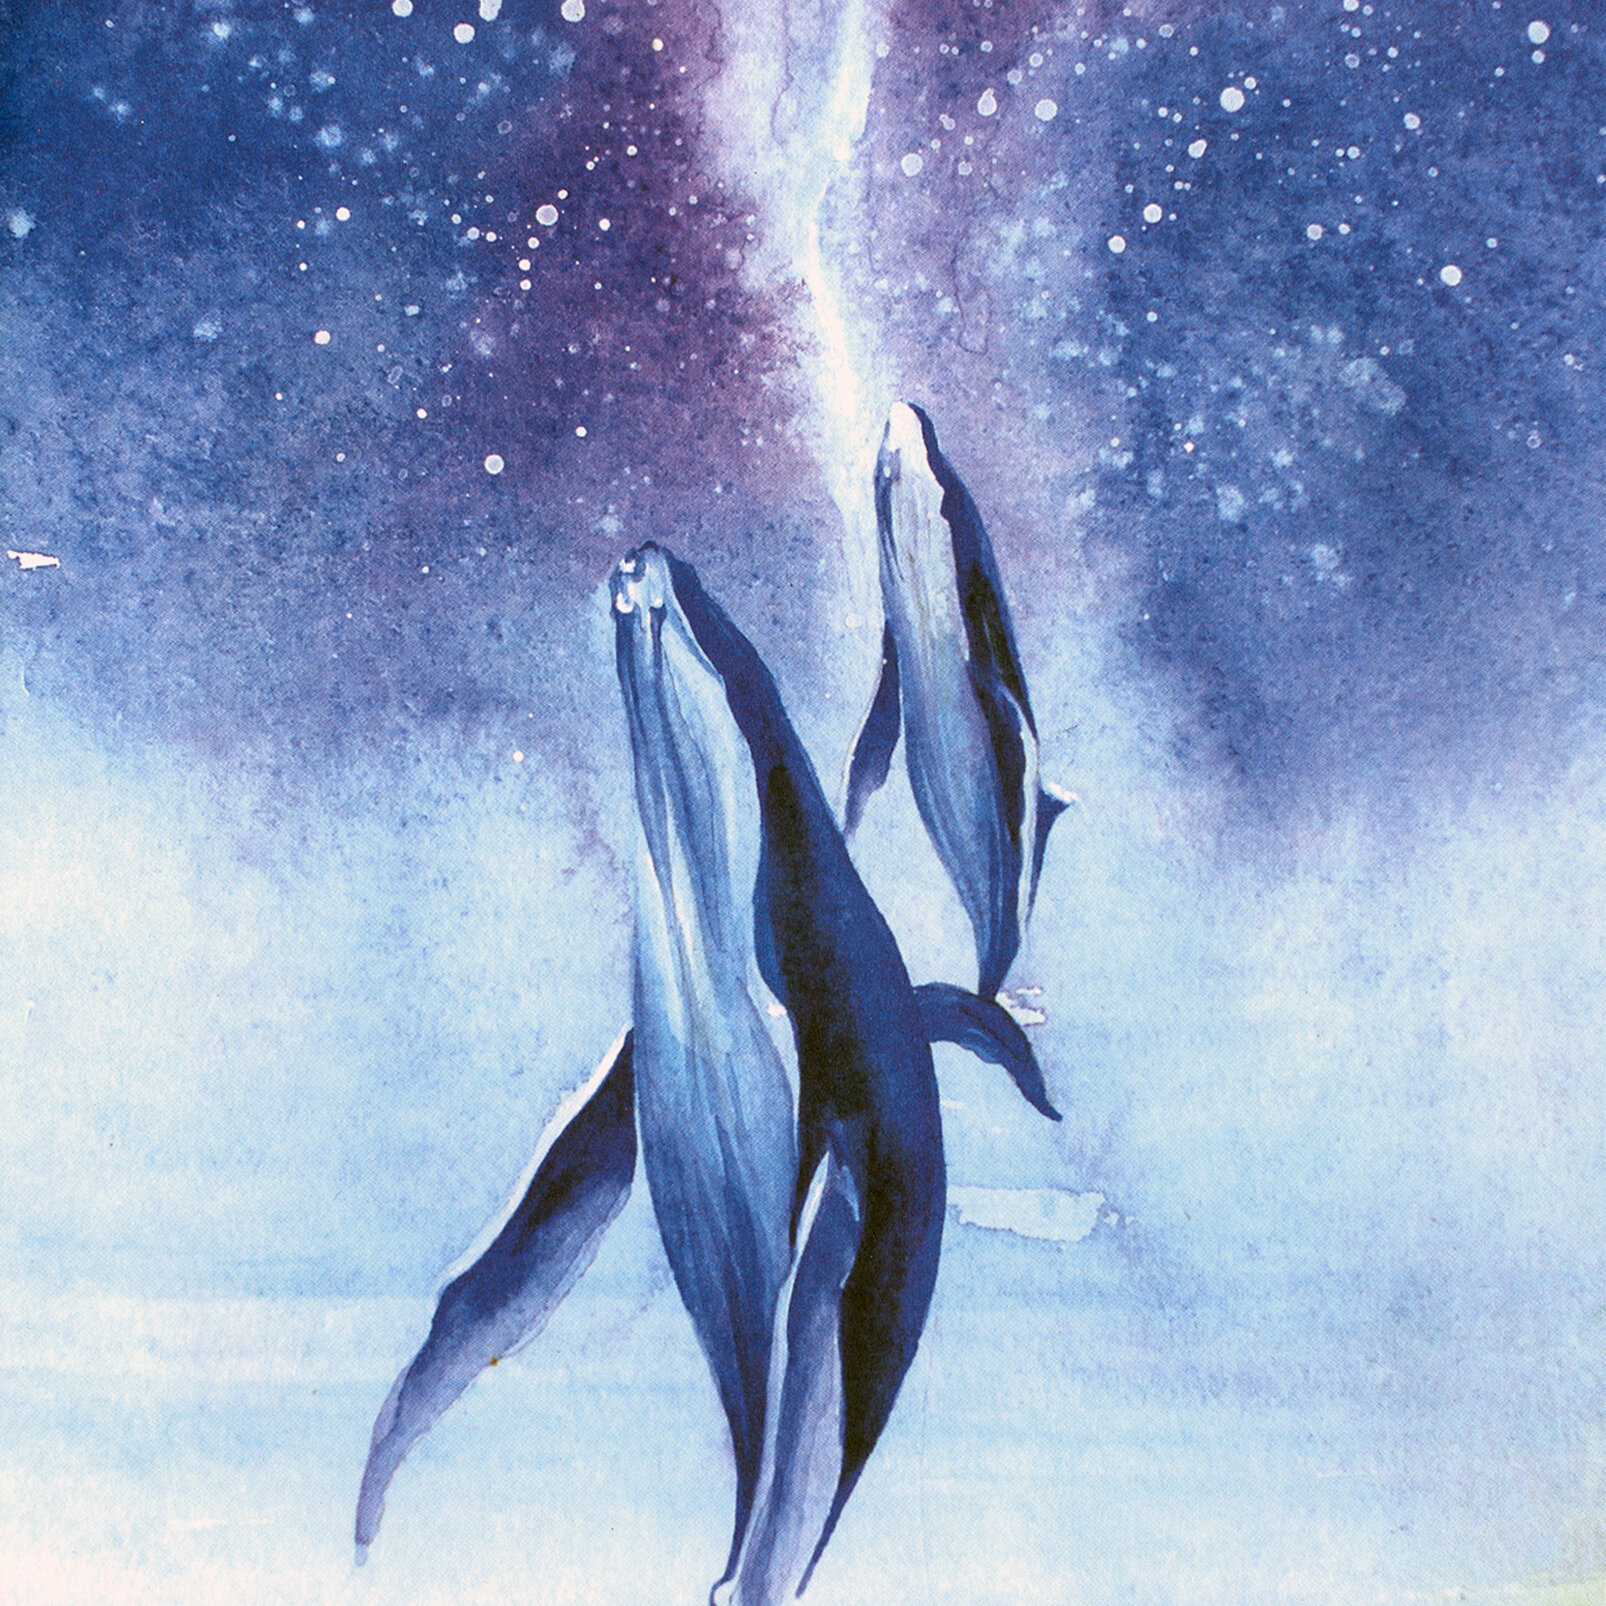 Сказка про кита и звезды. Книга-медитация для особенных людей - фото №3